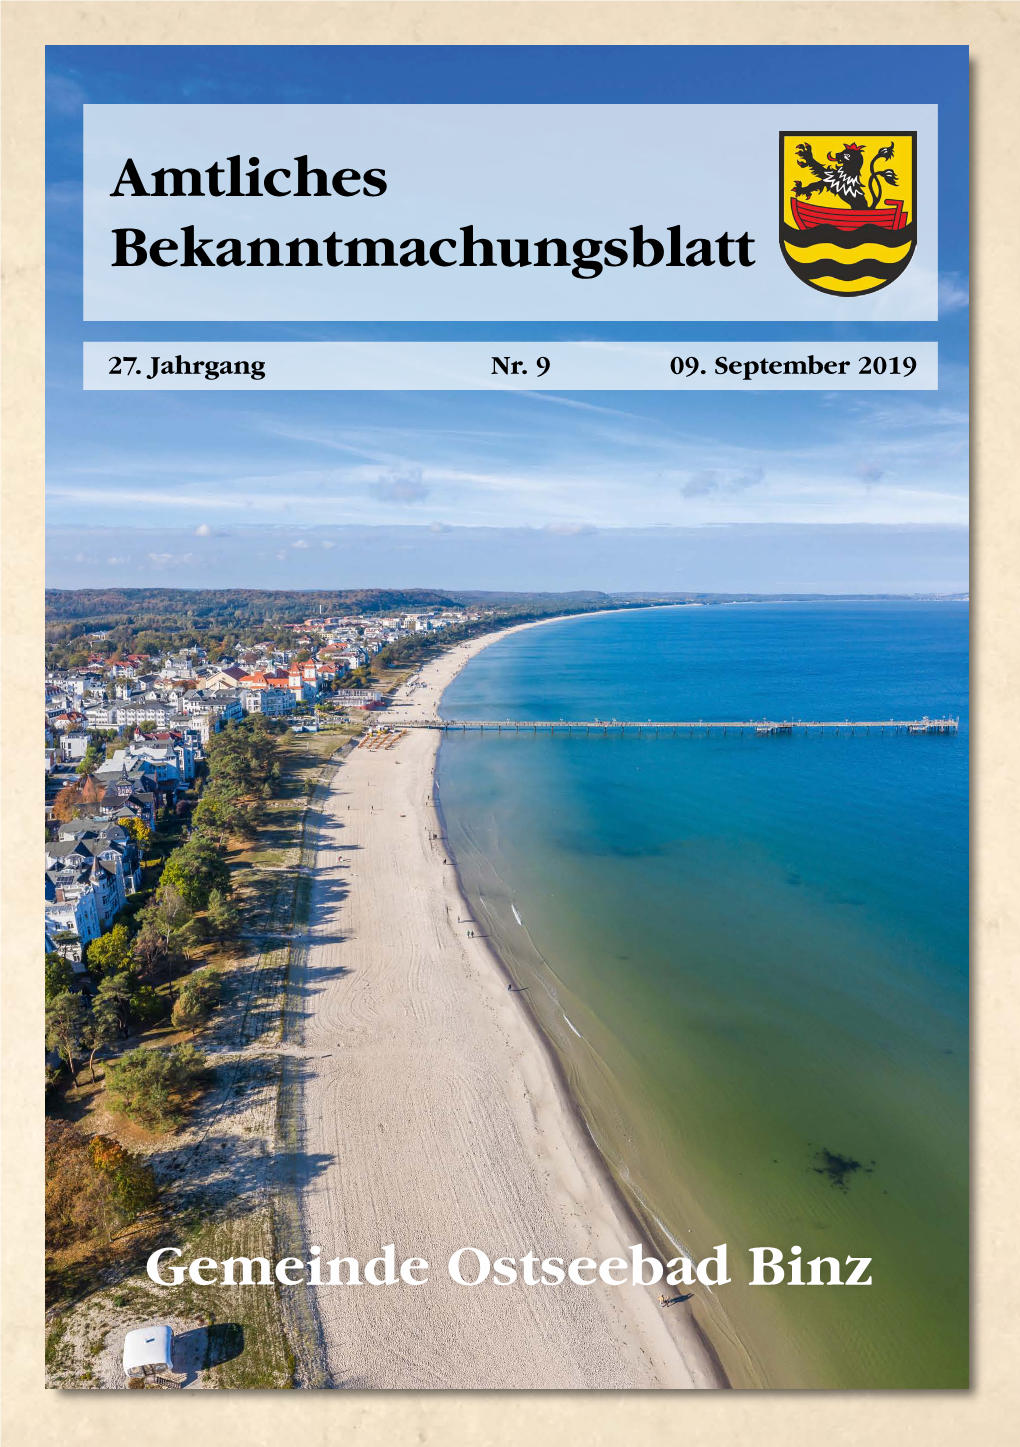 Amtliches Bekanntmachungsblatt Gemeinde Ostseebad Binz